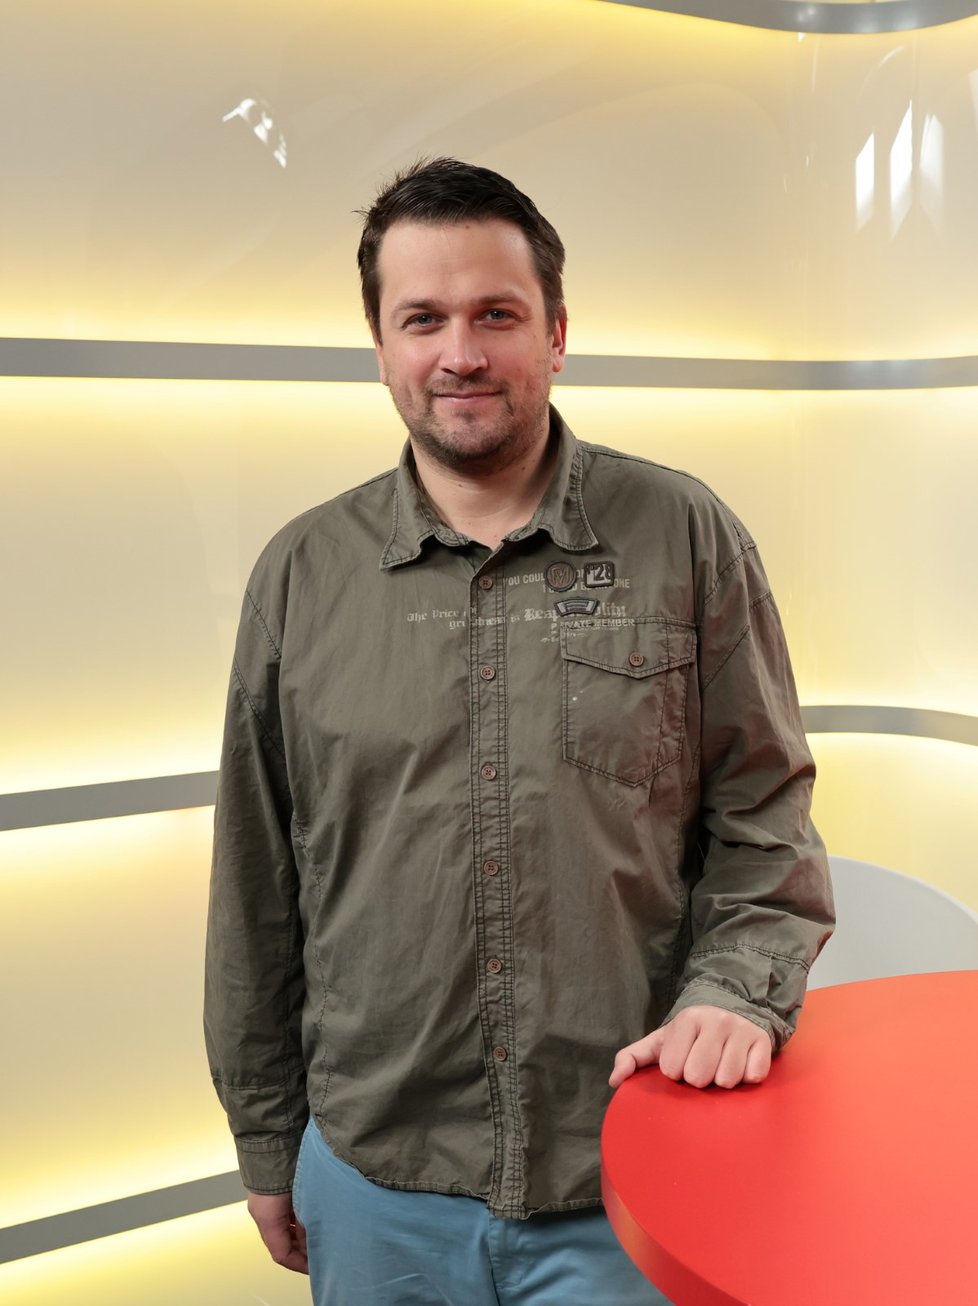 Host Blesk Podcastu se stal režisér seriálu Pickupeři Tadeáš Daněk.